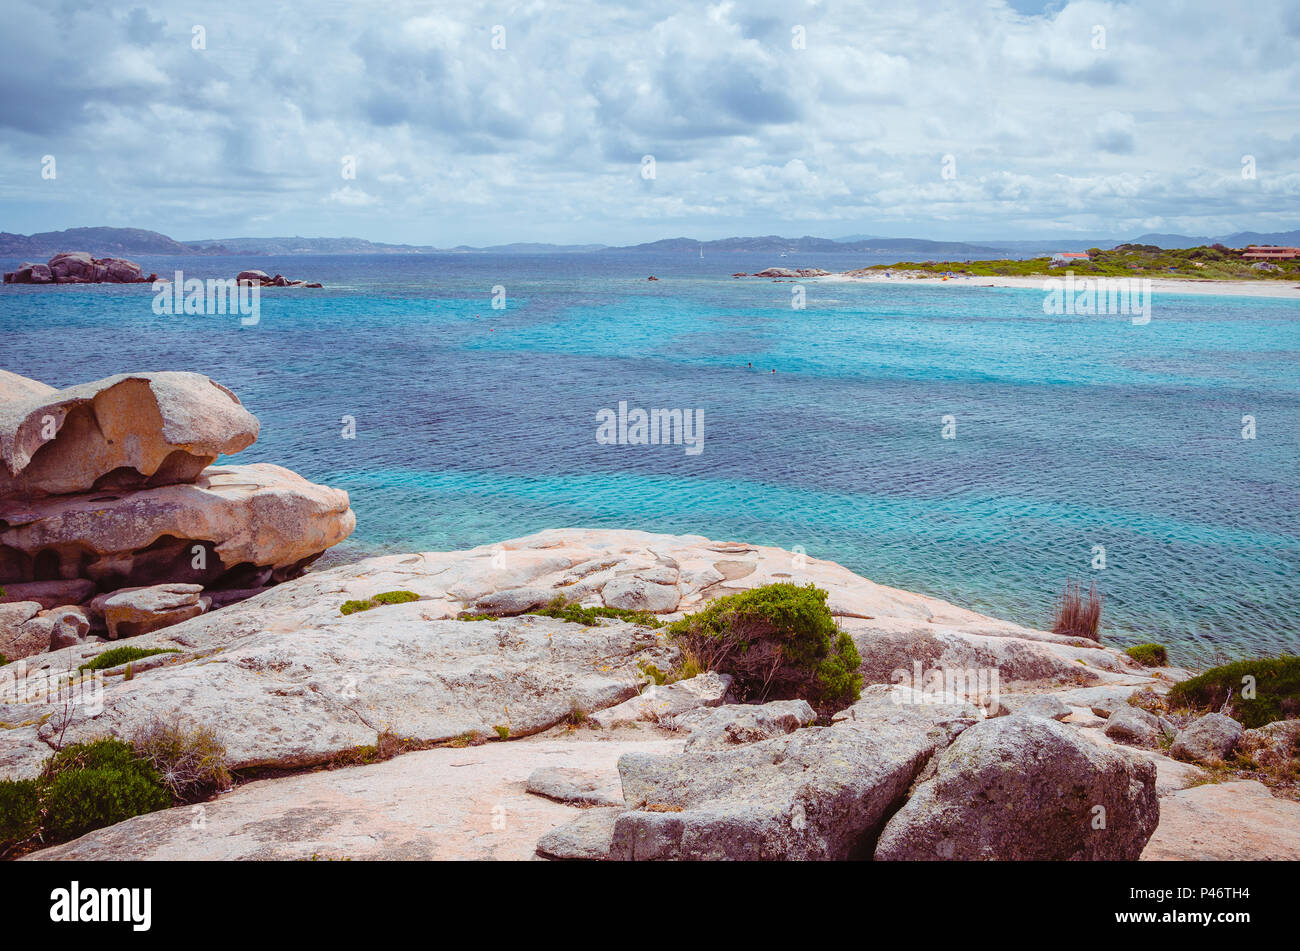 Les roches de granit bizarre et la formation de la mer d'azur clair sur la belle île de la Sardaigne, Italie, Sargedna Banque D'Images